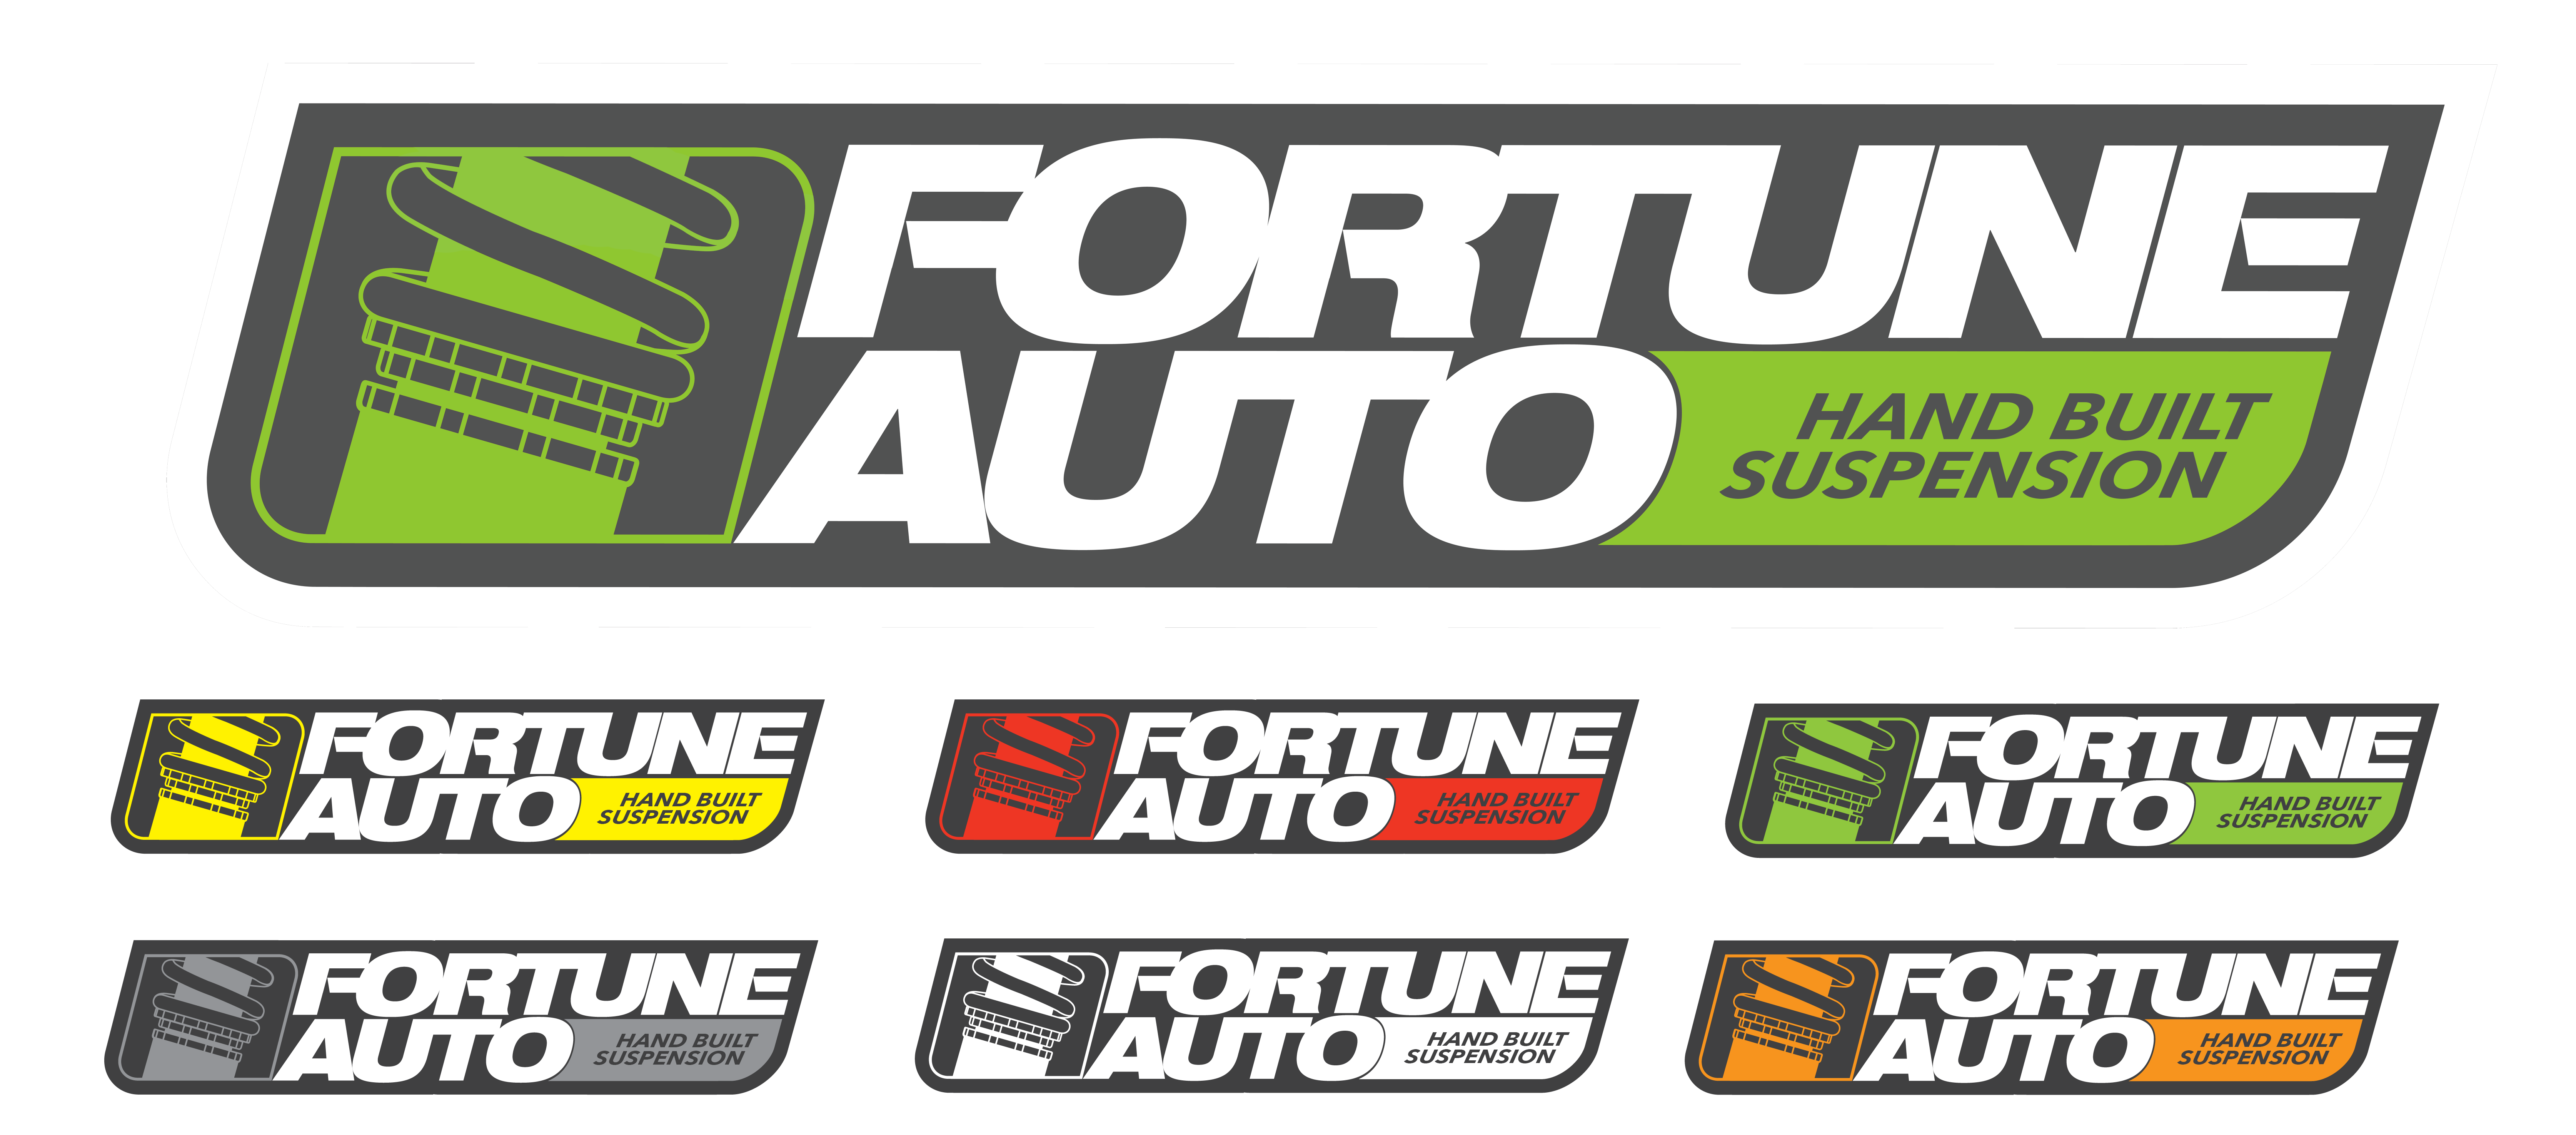 Fortune-Auto-Logo copy